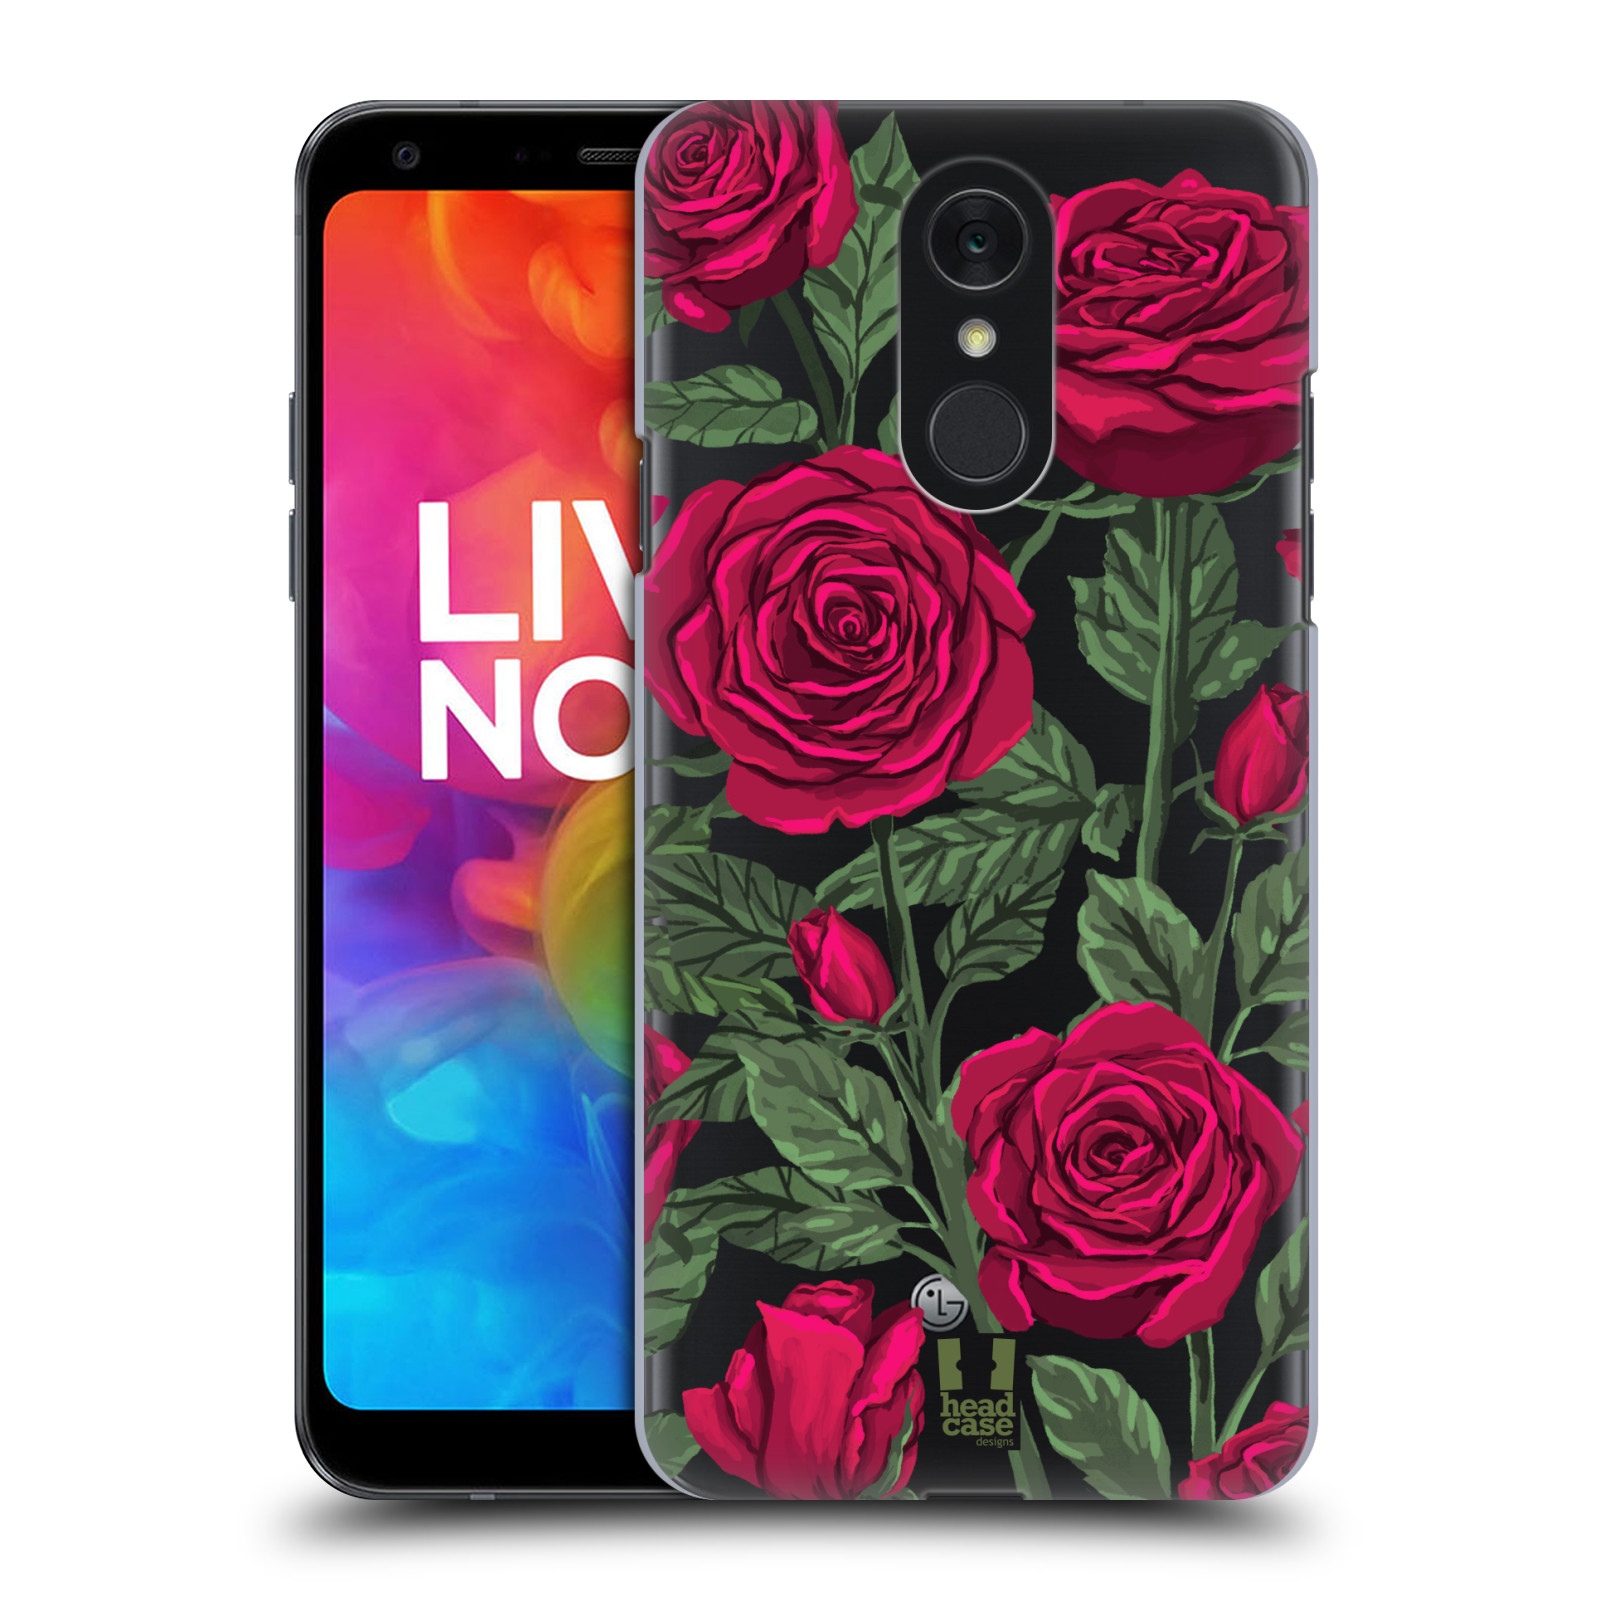 Pouzdro na mobil LG Q7 - HEAD CASE - květina růže